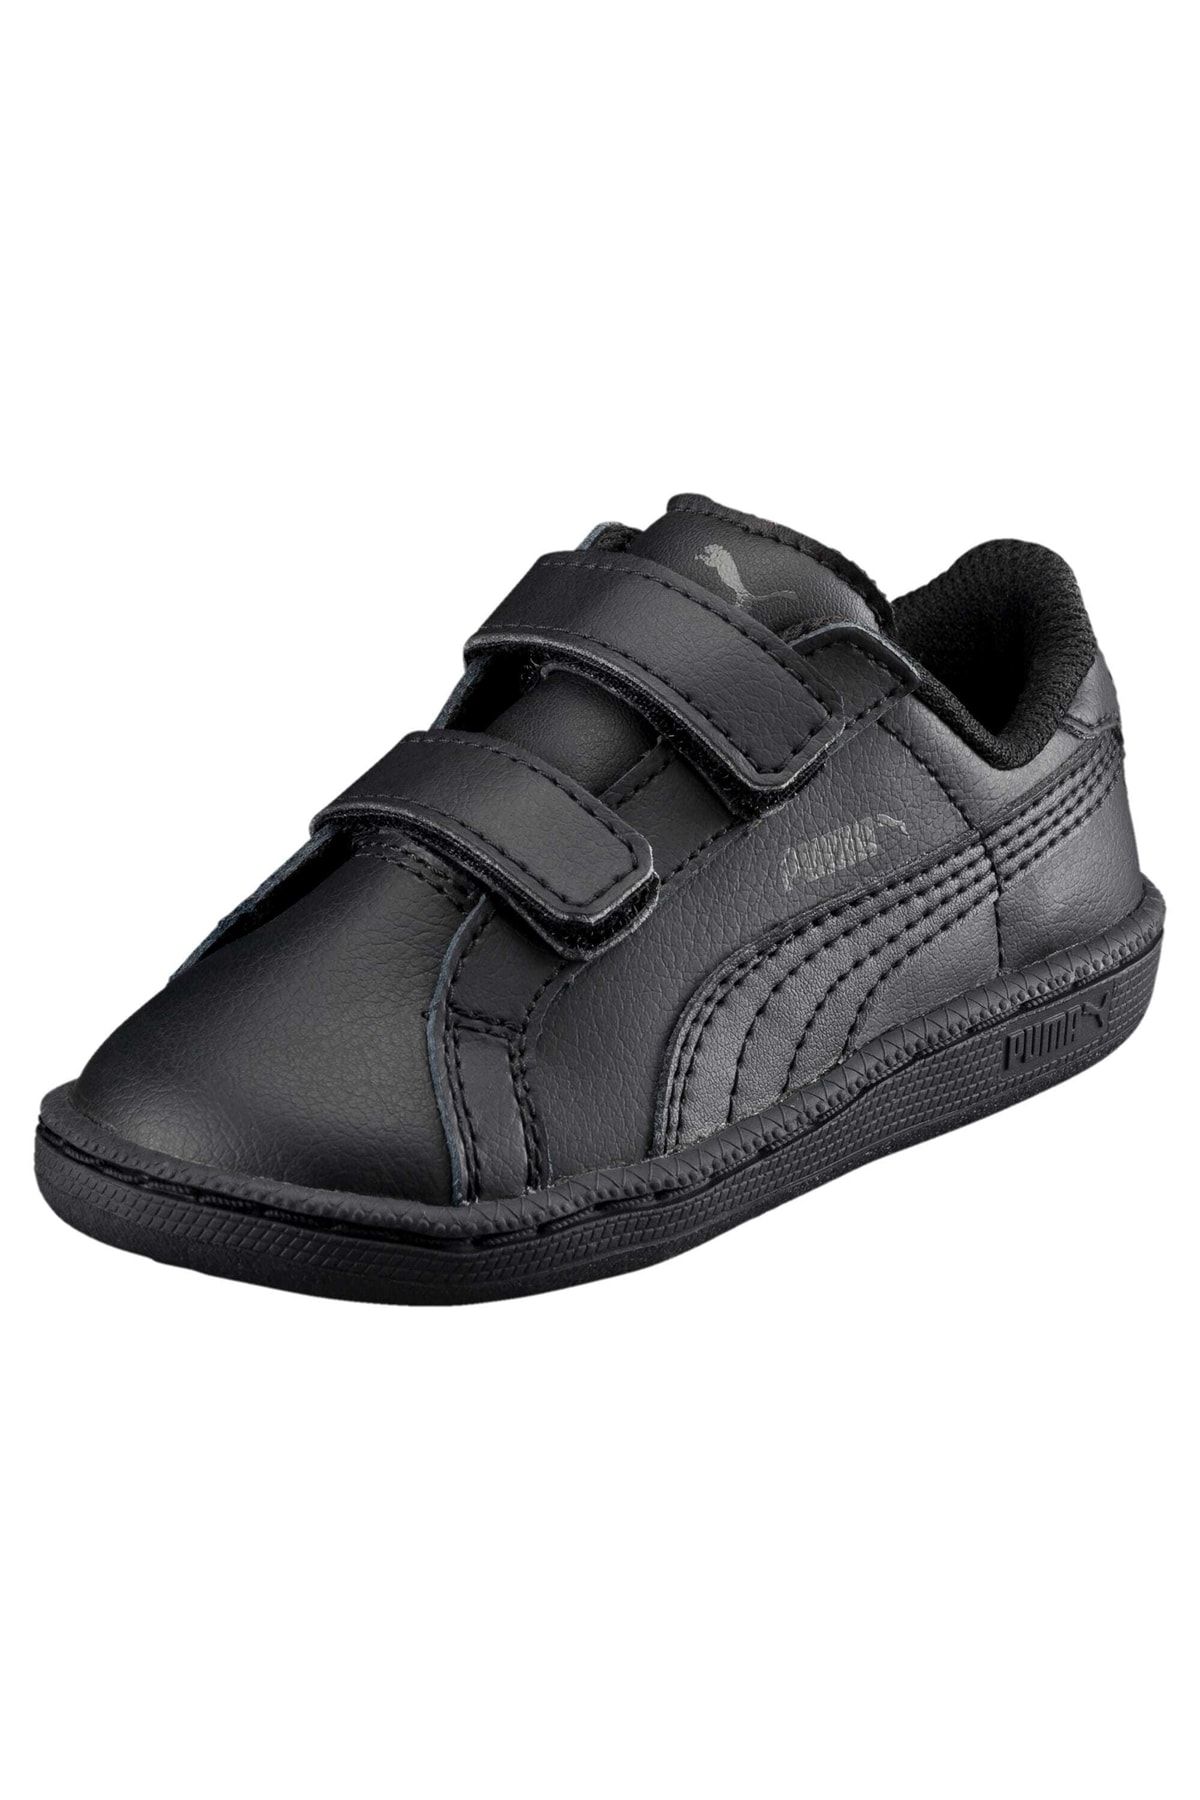 - Puma Smash V Leather Shoes Kids Trendyol